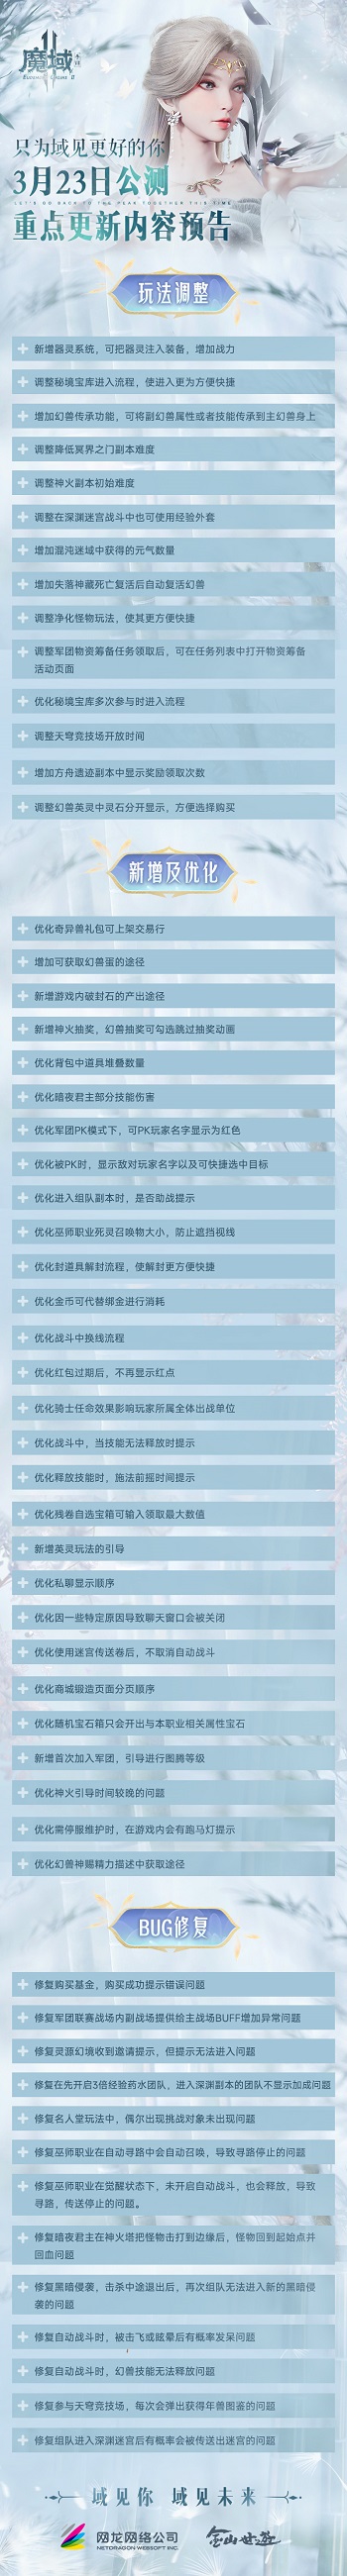 魔域17周年献礼之作《魔域手游2》公测定档3月23日